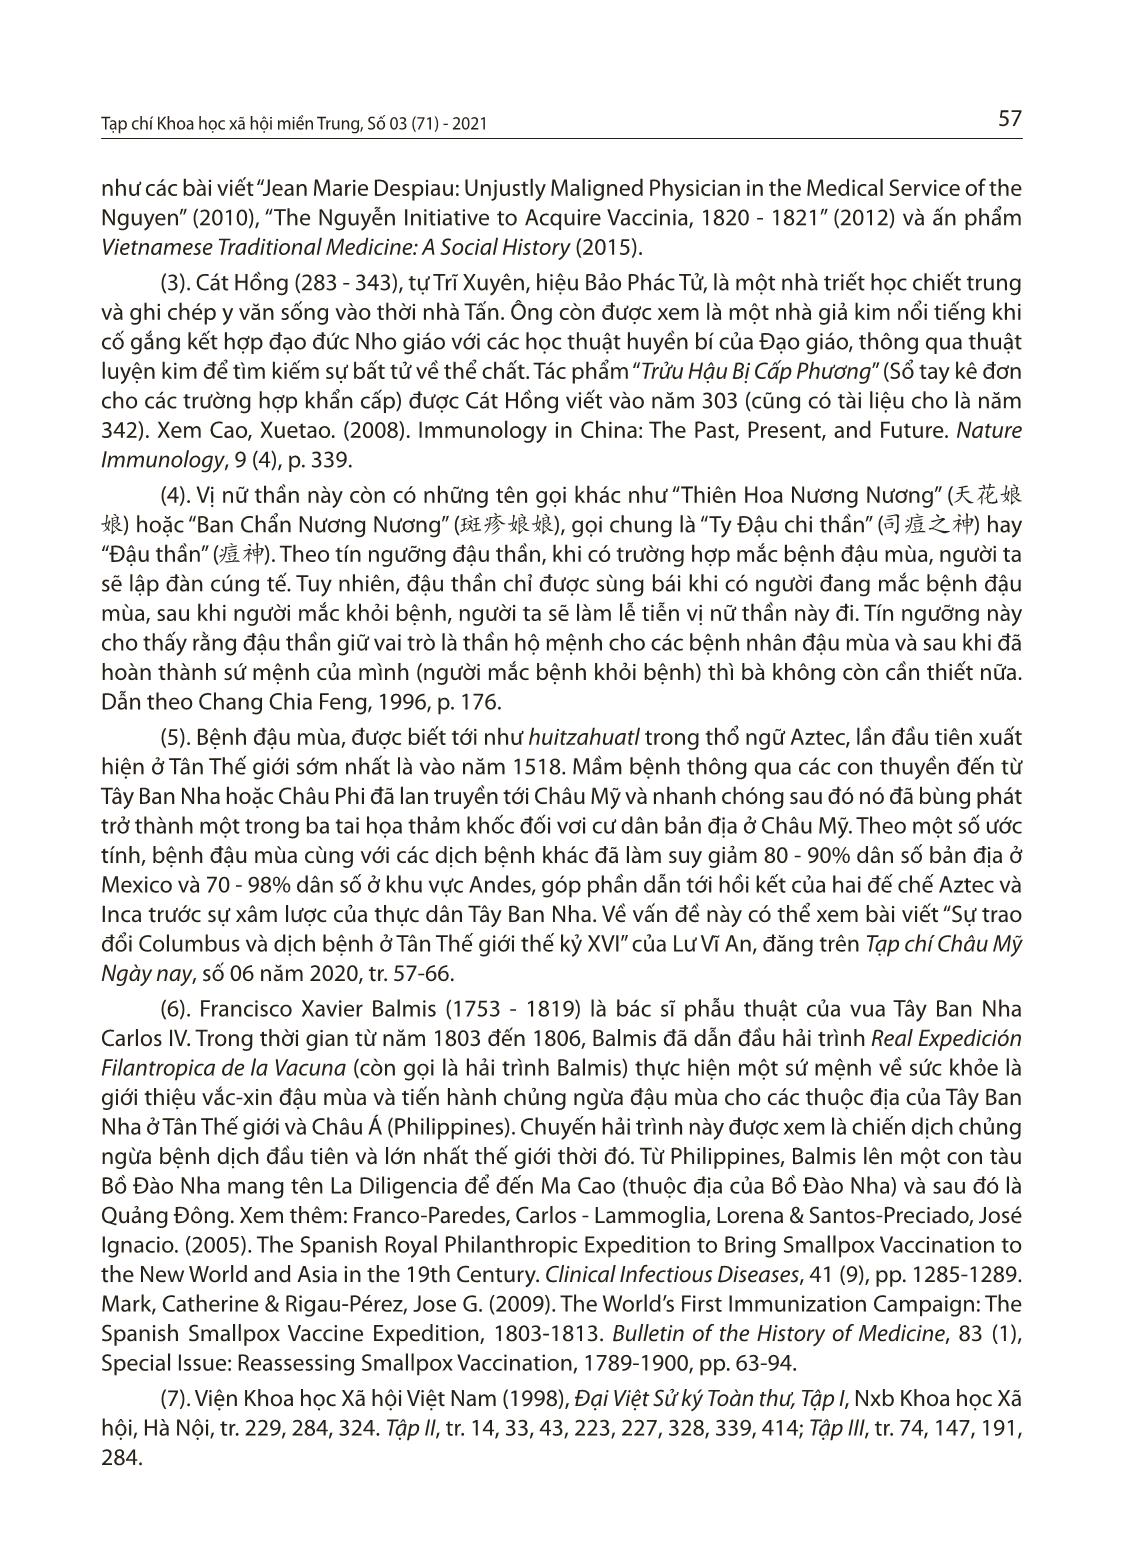 Bệnh đậu mùa ở Việt Nam thời Nguyễn và việc tiếp cận vắc-Xin đậu mùa của nhà Nguyễn vào đầu thế kỷ XIX trang 9